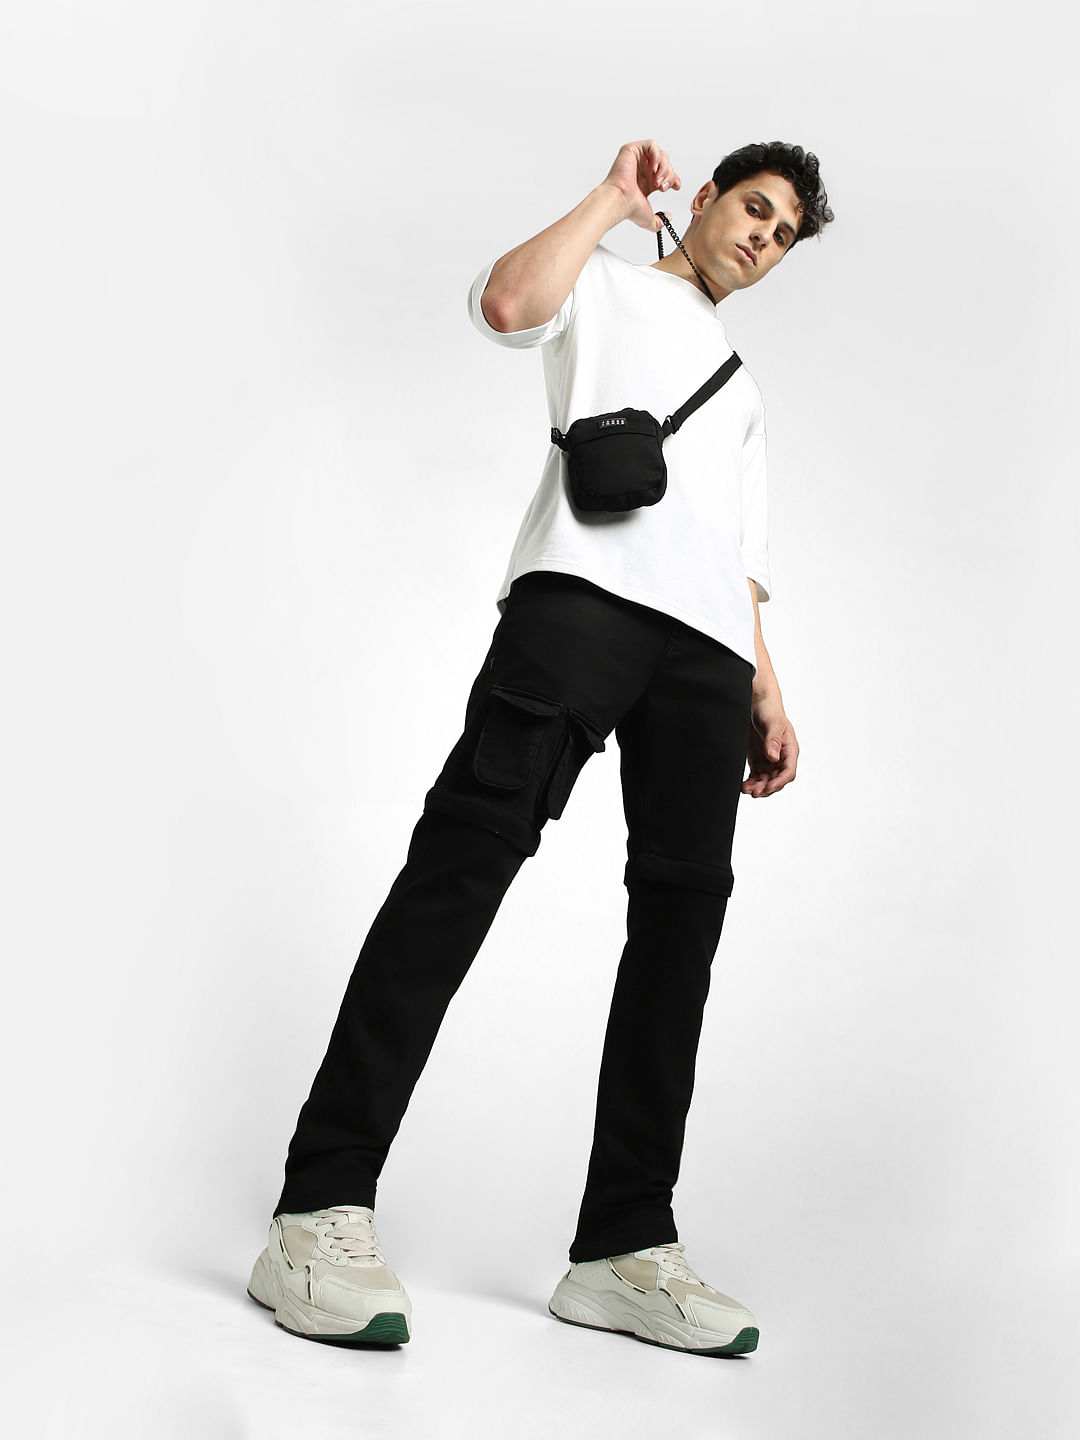 Shellac Japan cotton/nylon anti-fit pants men's S | eBay